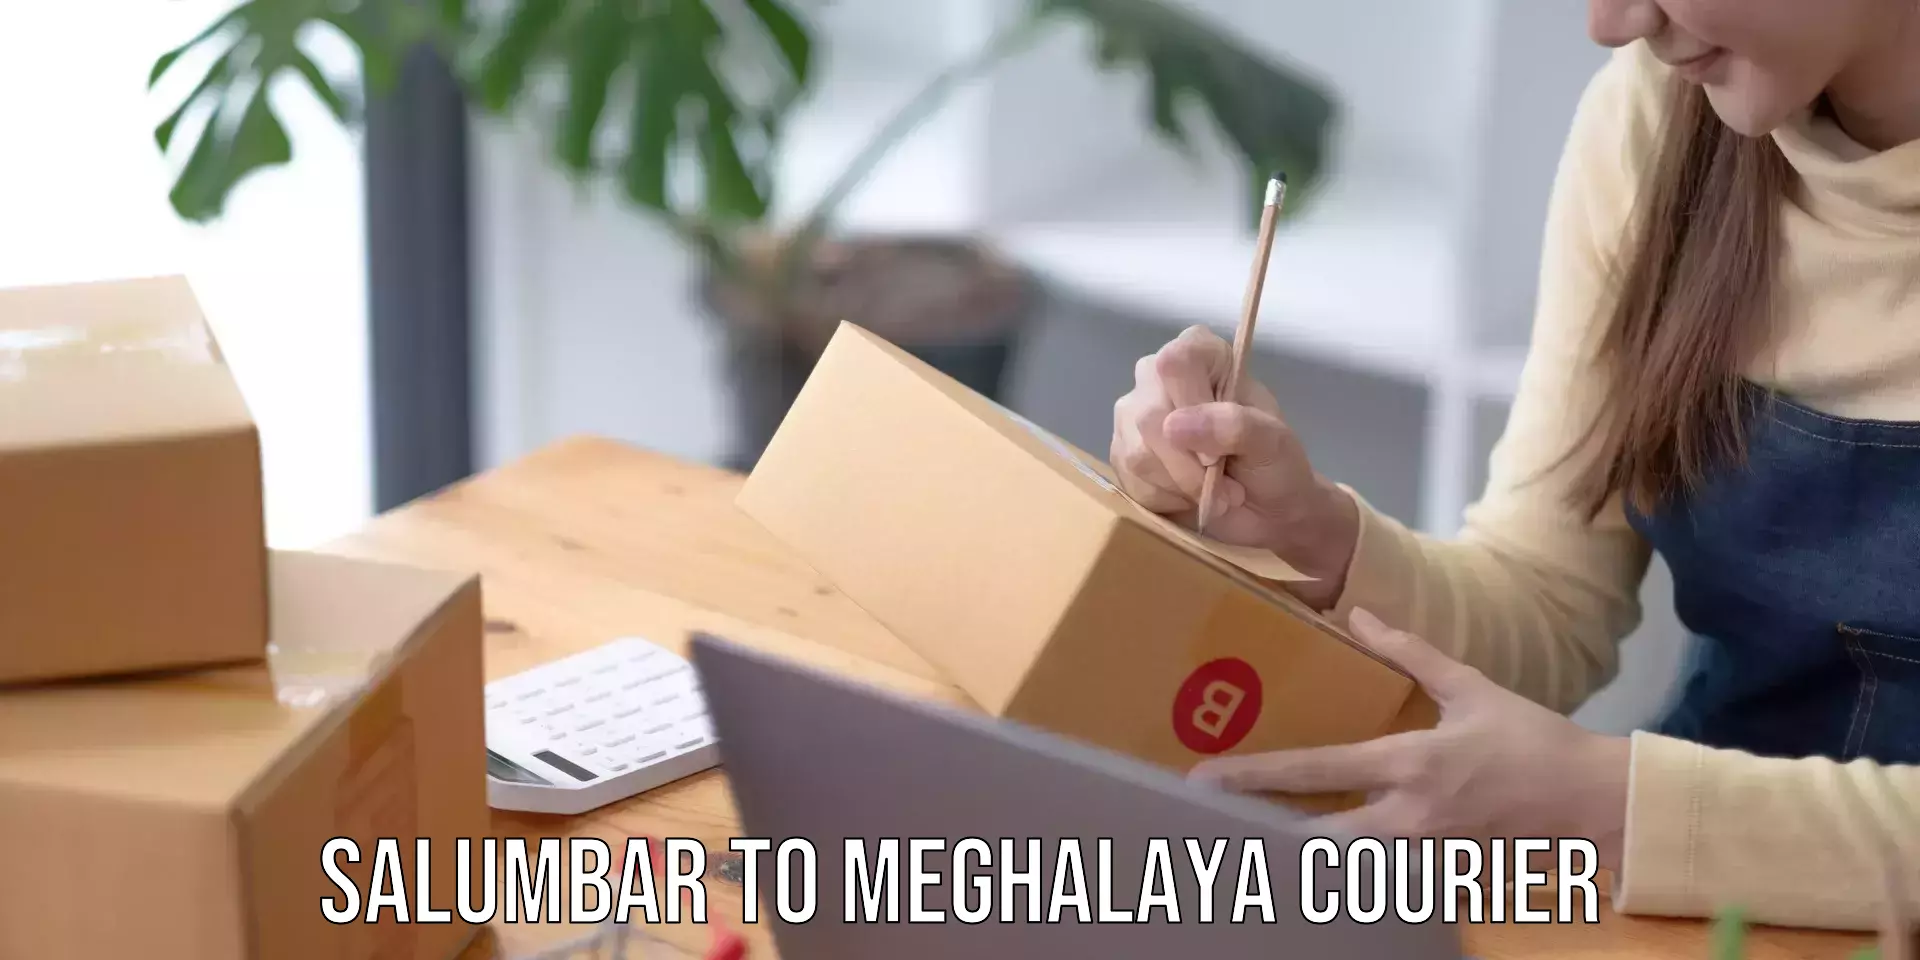 Reliable courier service Salumbar to Meghalaya